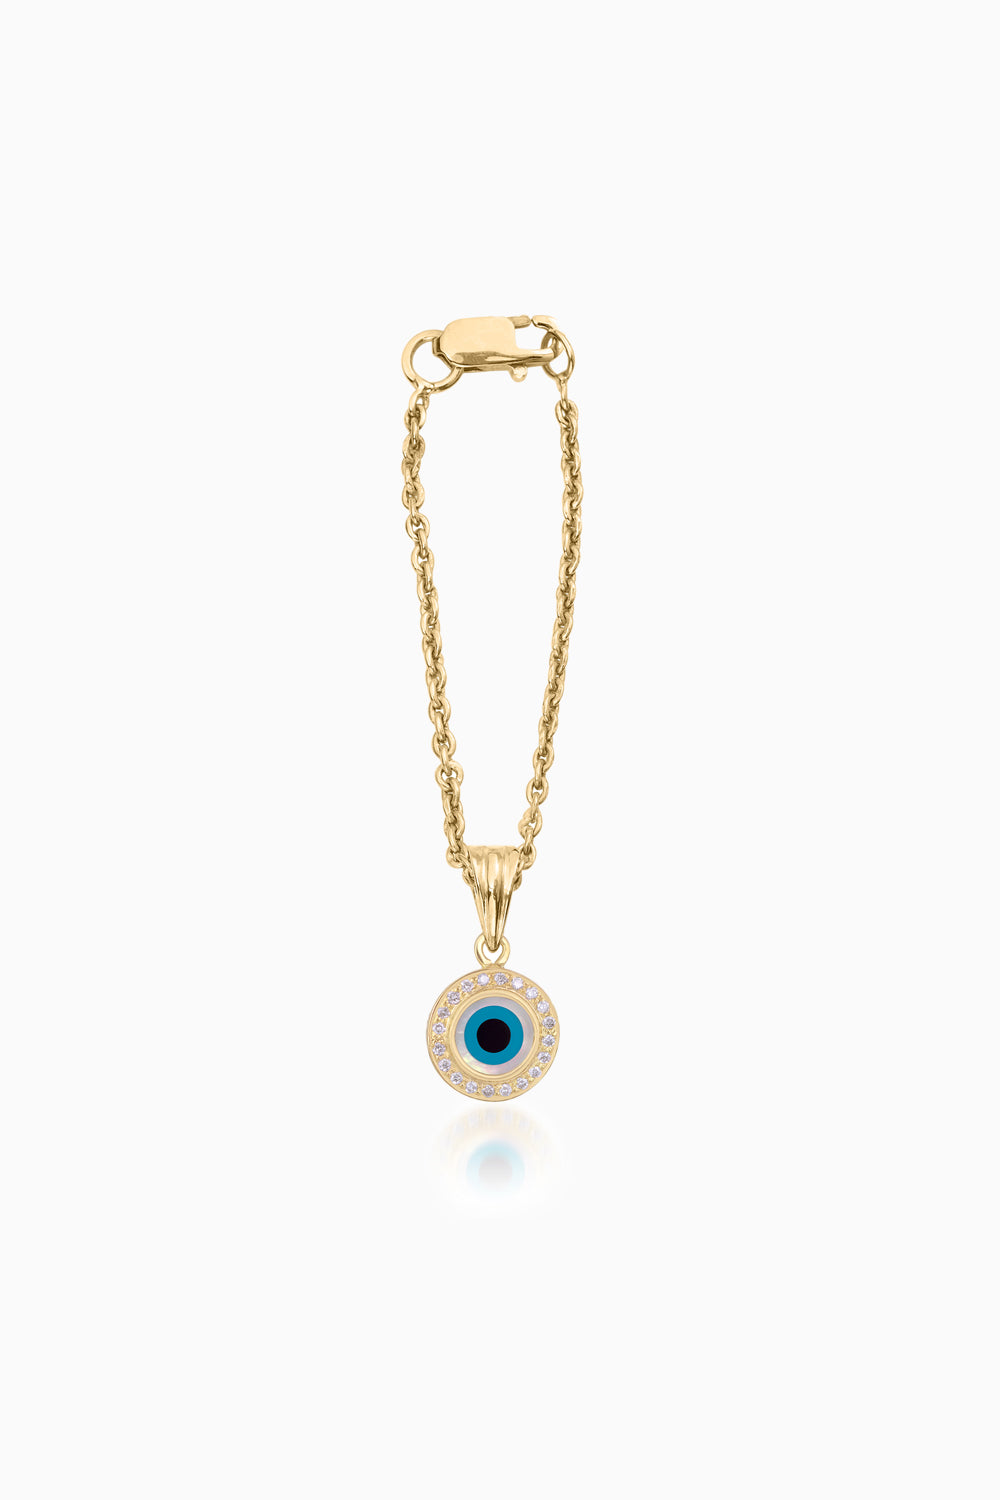 Round Evil Eye Diamond Chain Watch 14KT Gold Charm